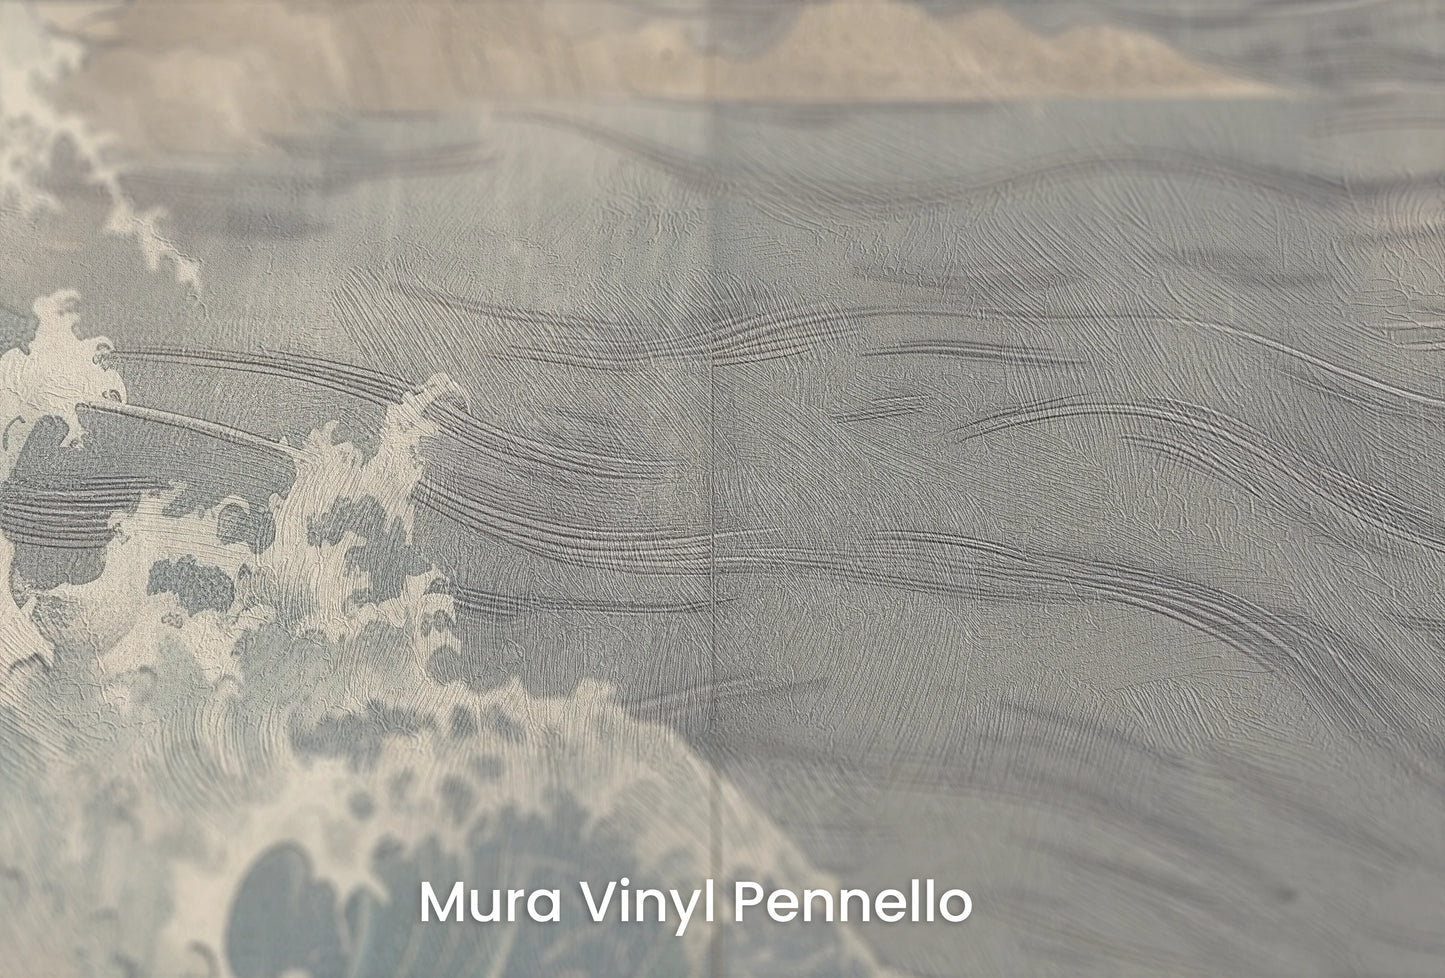 Zbliżenie na artystyczną fototapetę o nazwie Pine Wave Echo na podłożu Mura Vinyl Pennello - faktura pociągnięć pędzla malarskiego.